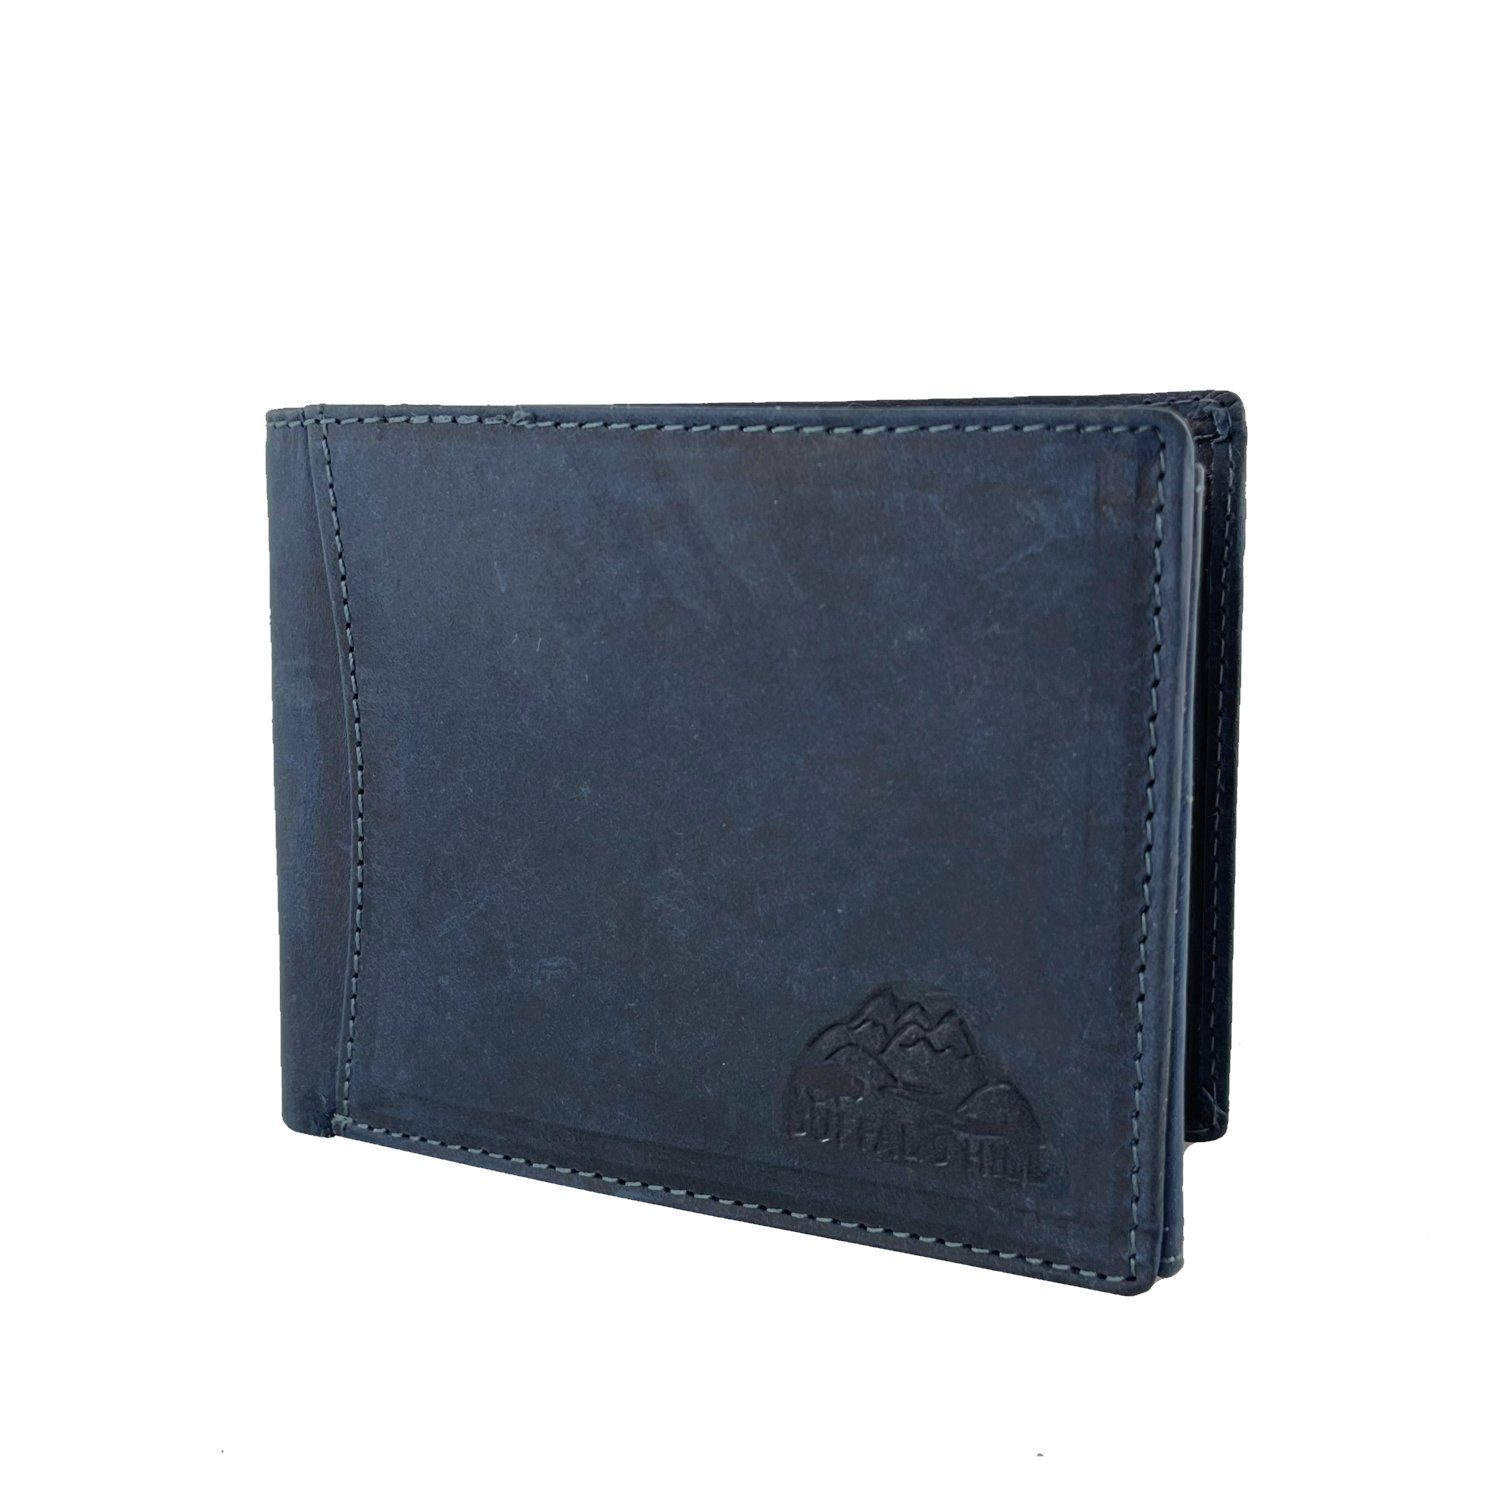 RFID-Schutz, Portemonnaie, in mit Büffelleder Querformat im L&B Geldbörse Wallet Kartenfächern elegantes Blau 8 integrierter